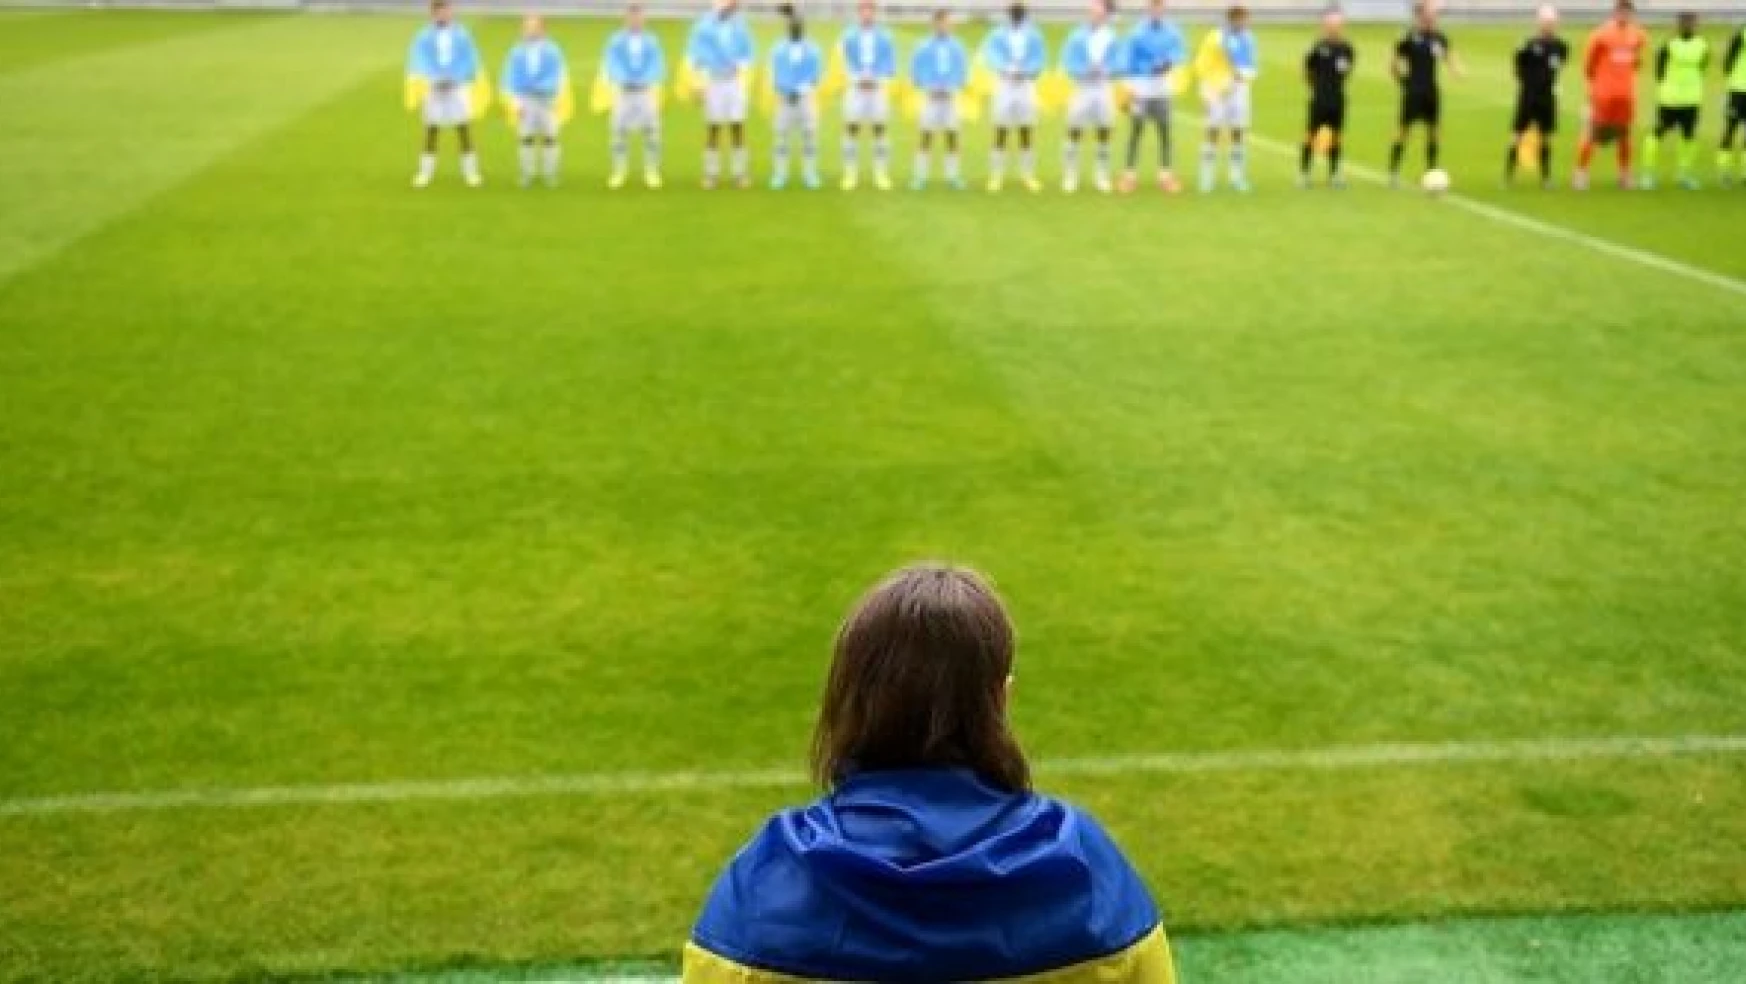 Savaşın sürdüğü Ukrayna'da futbol ligi başladı